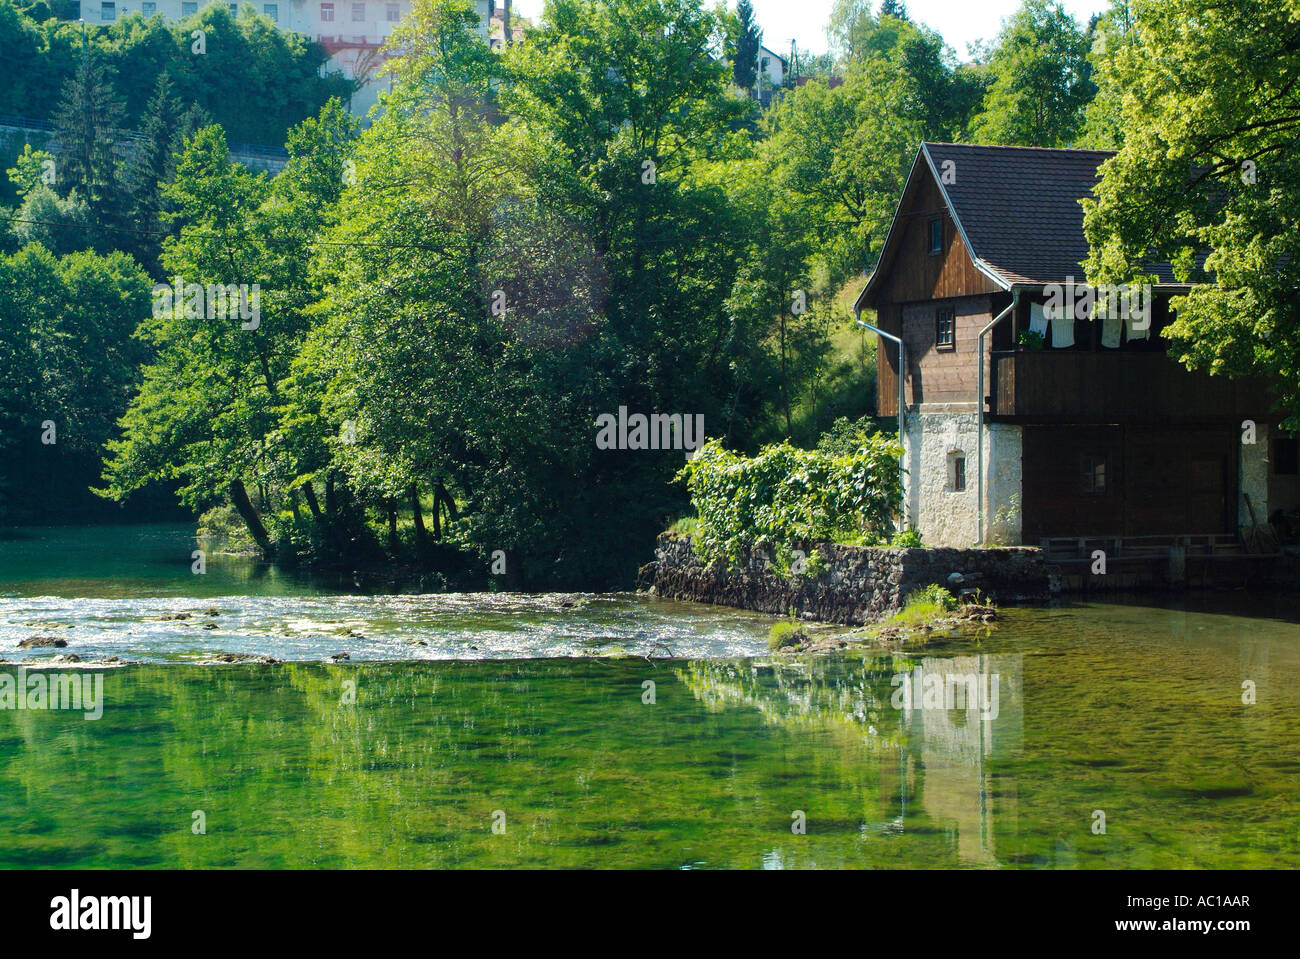 River Slunjcica in Rastoke in the Kordun region in Central Croatia Stock Photo